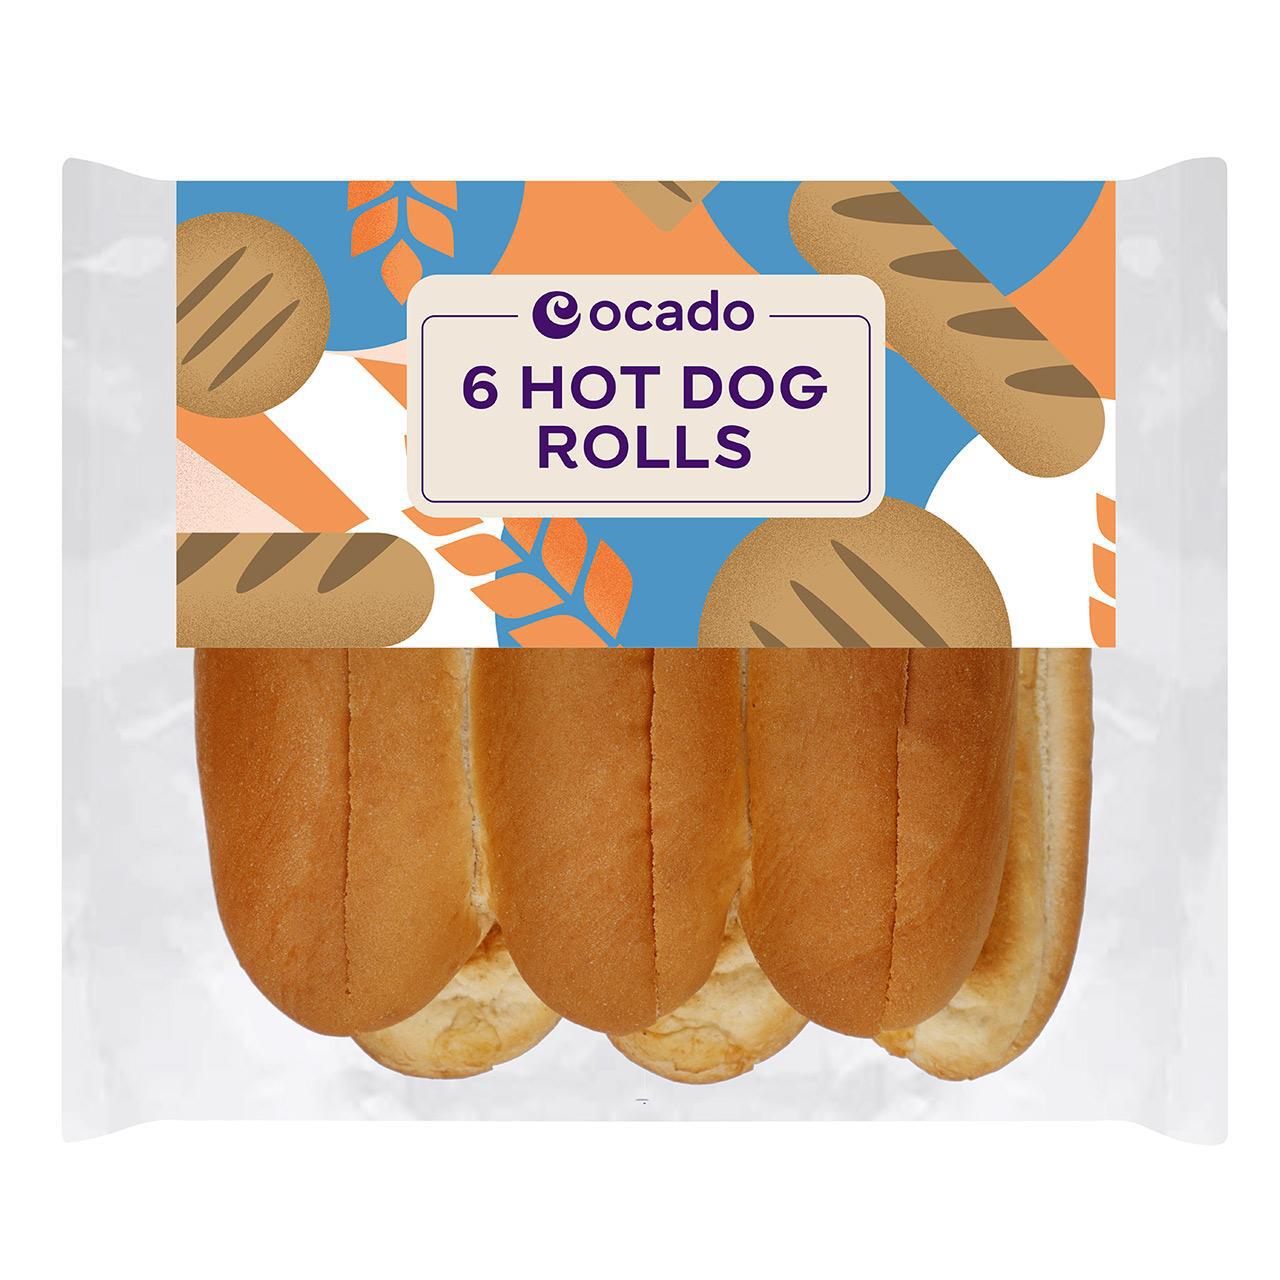 Ocado Hot Dog Rolls 6 per pack